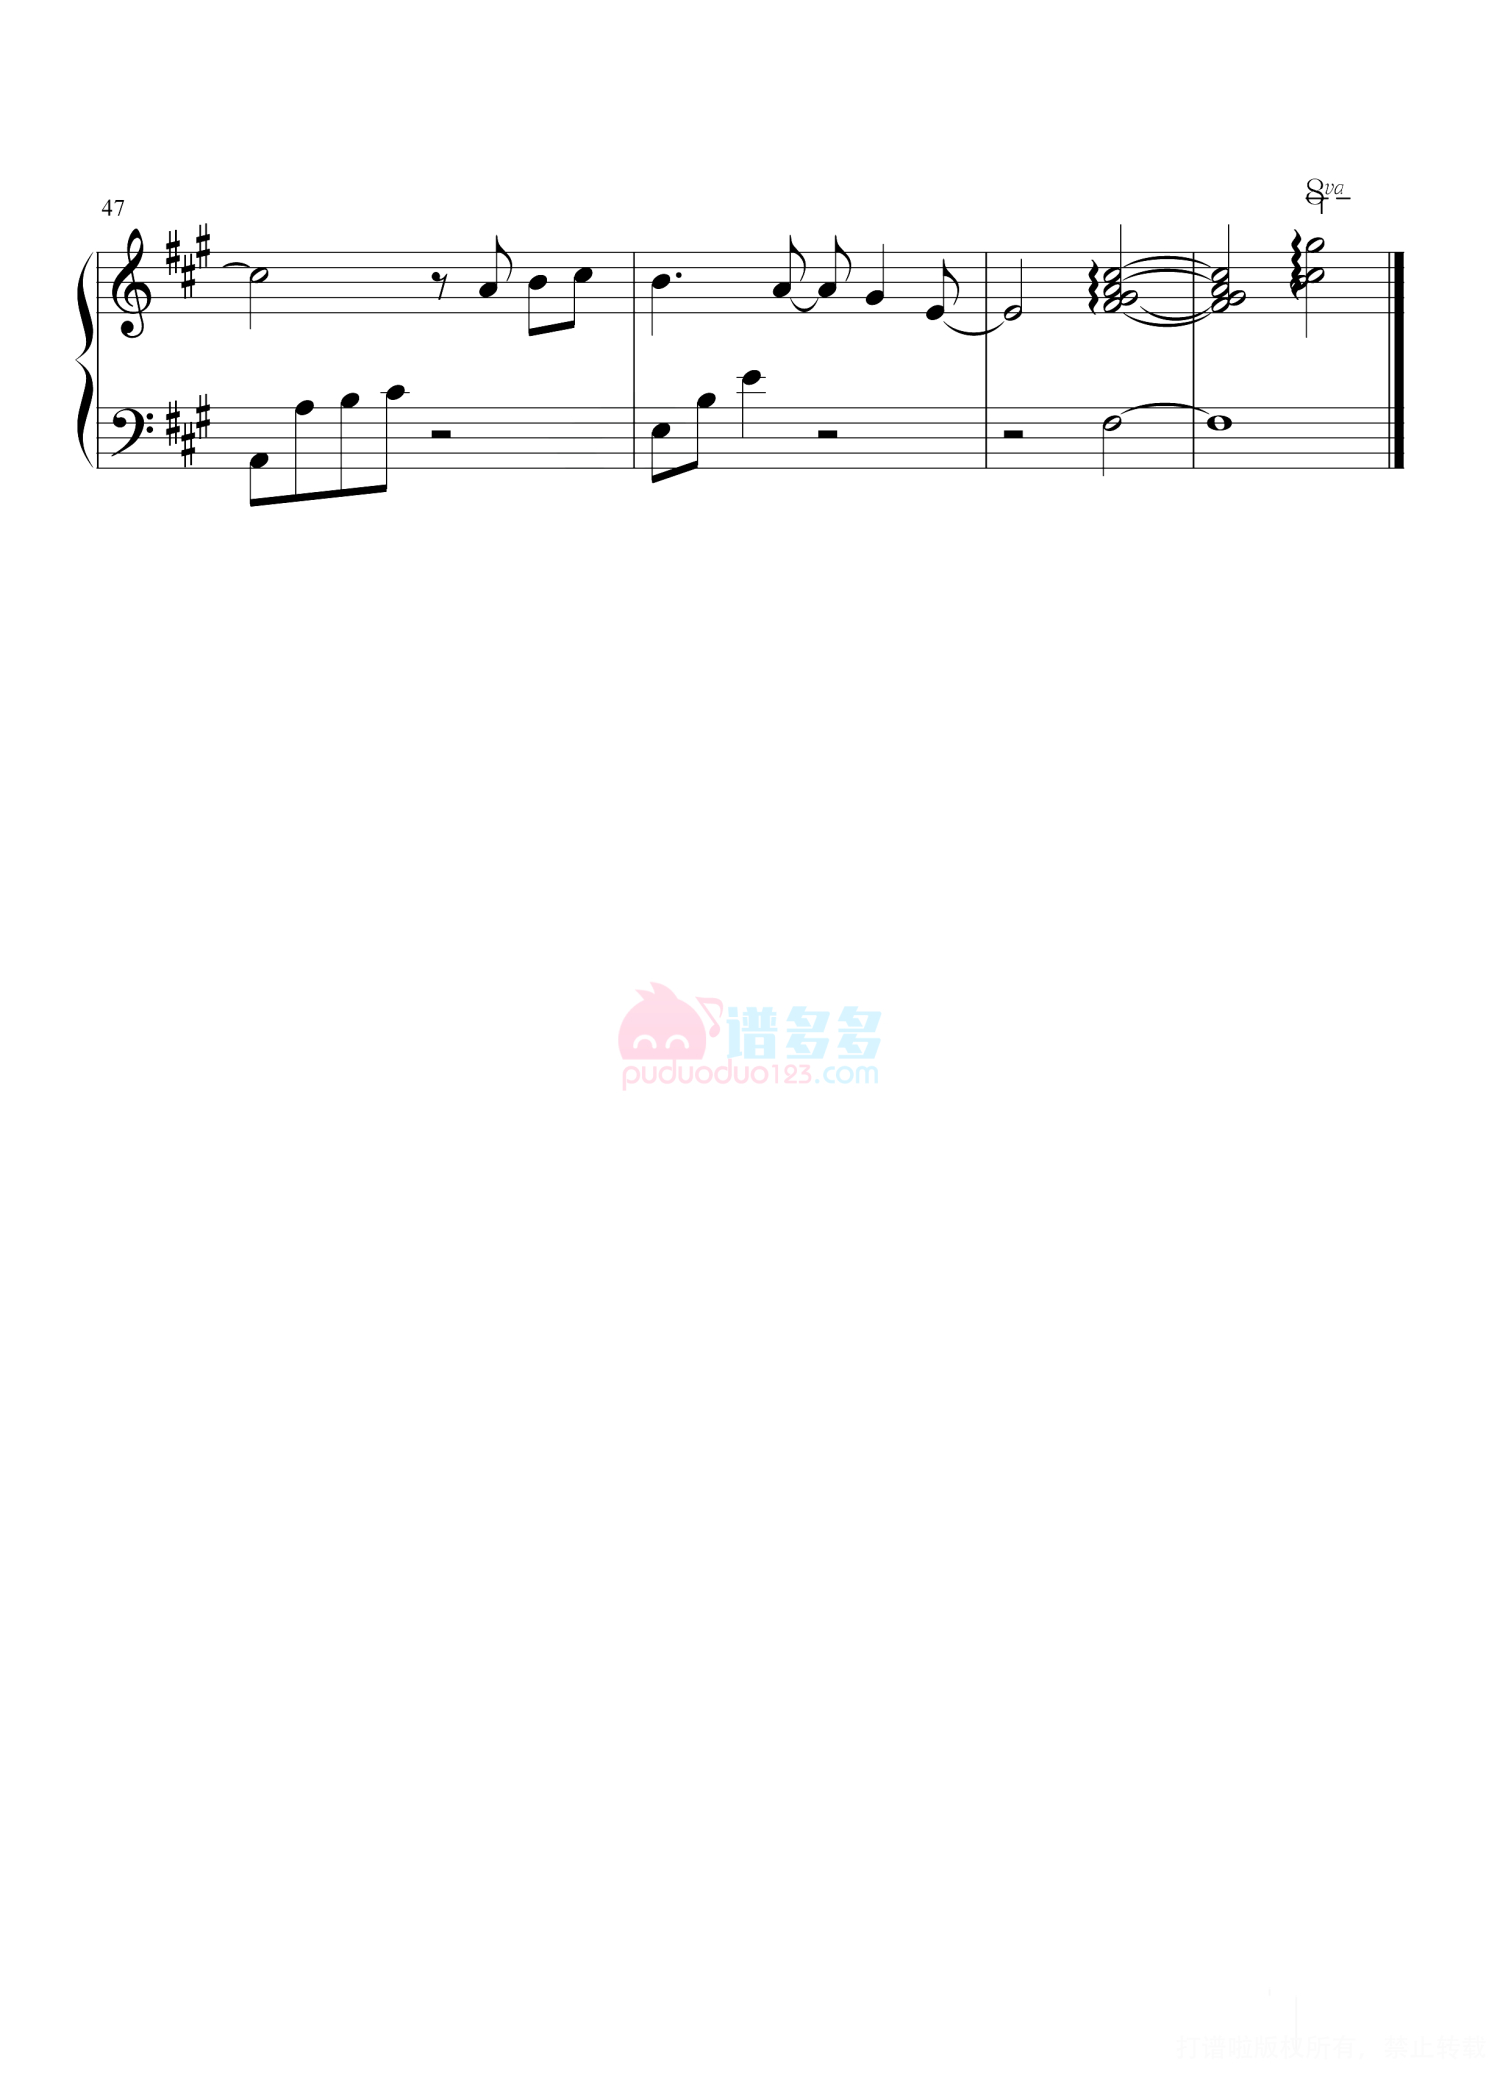 IN-K 王忻辰《迷失幻境》钢琴谱第4张